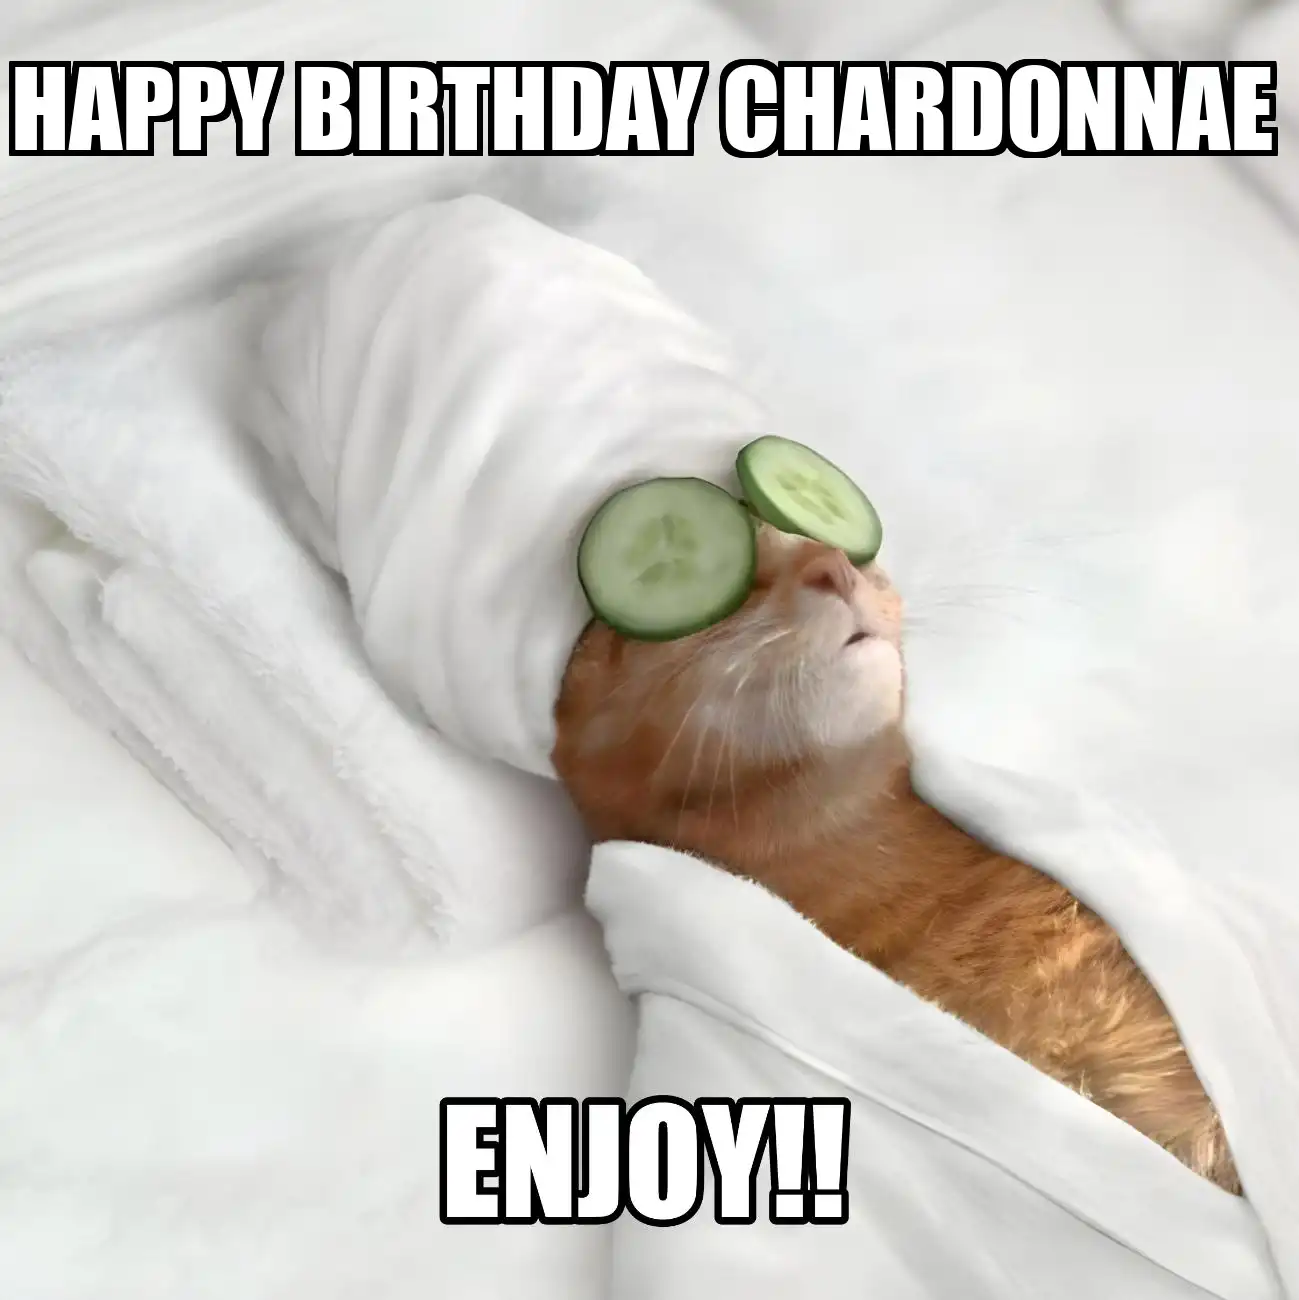 Happy Birthday Chardonnae Enjoy Cat Meme